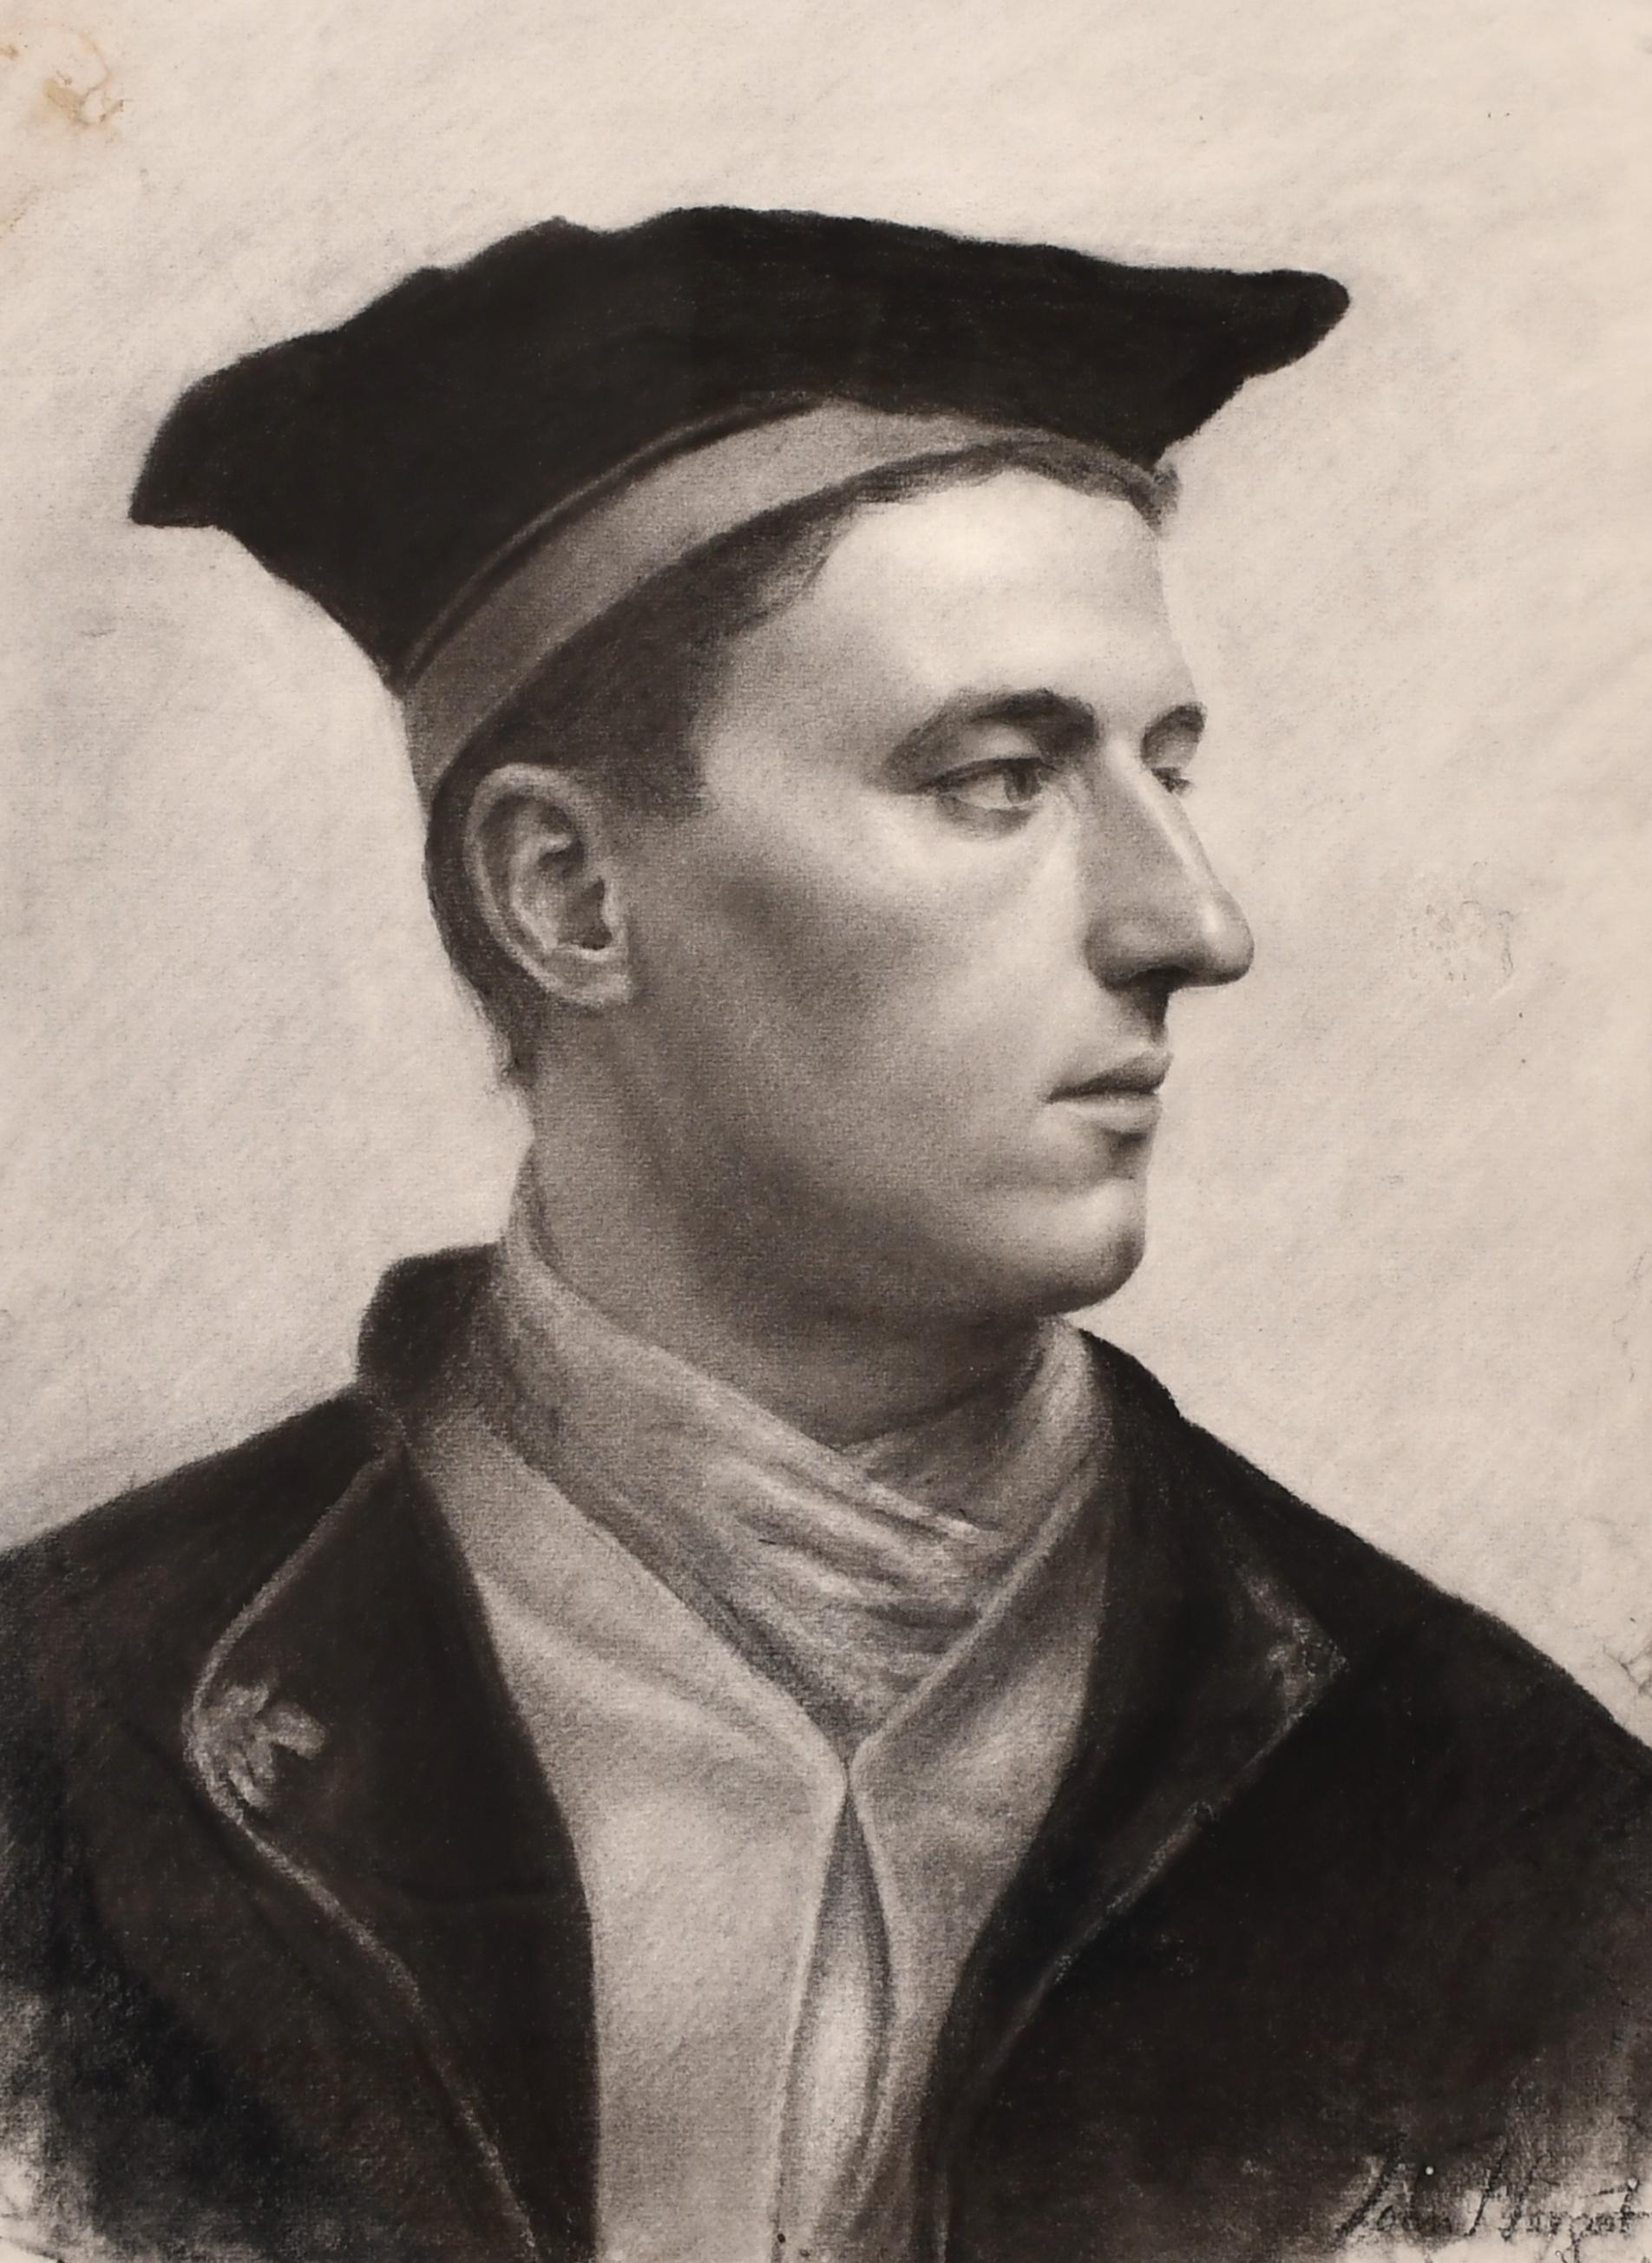 Portrait de l'artiste John Seymour Lucas au fusain, daté de 1907 par le filigrane du papier,  dessiné par Alphonse Legros. Il s'agit d'un dessin de qualité muséale. Signature postérieure de John Singer Sargent superposée par une main inconnue. 